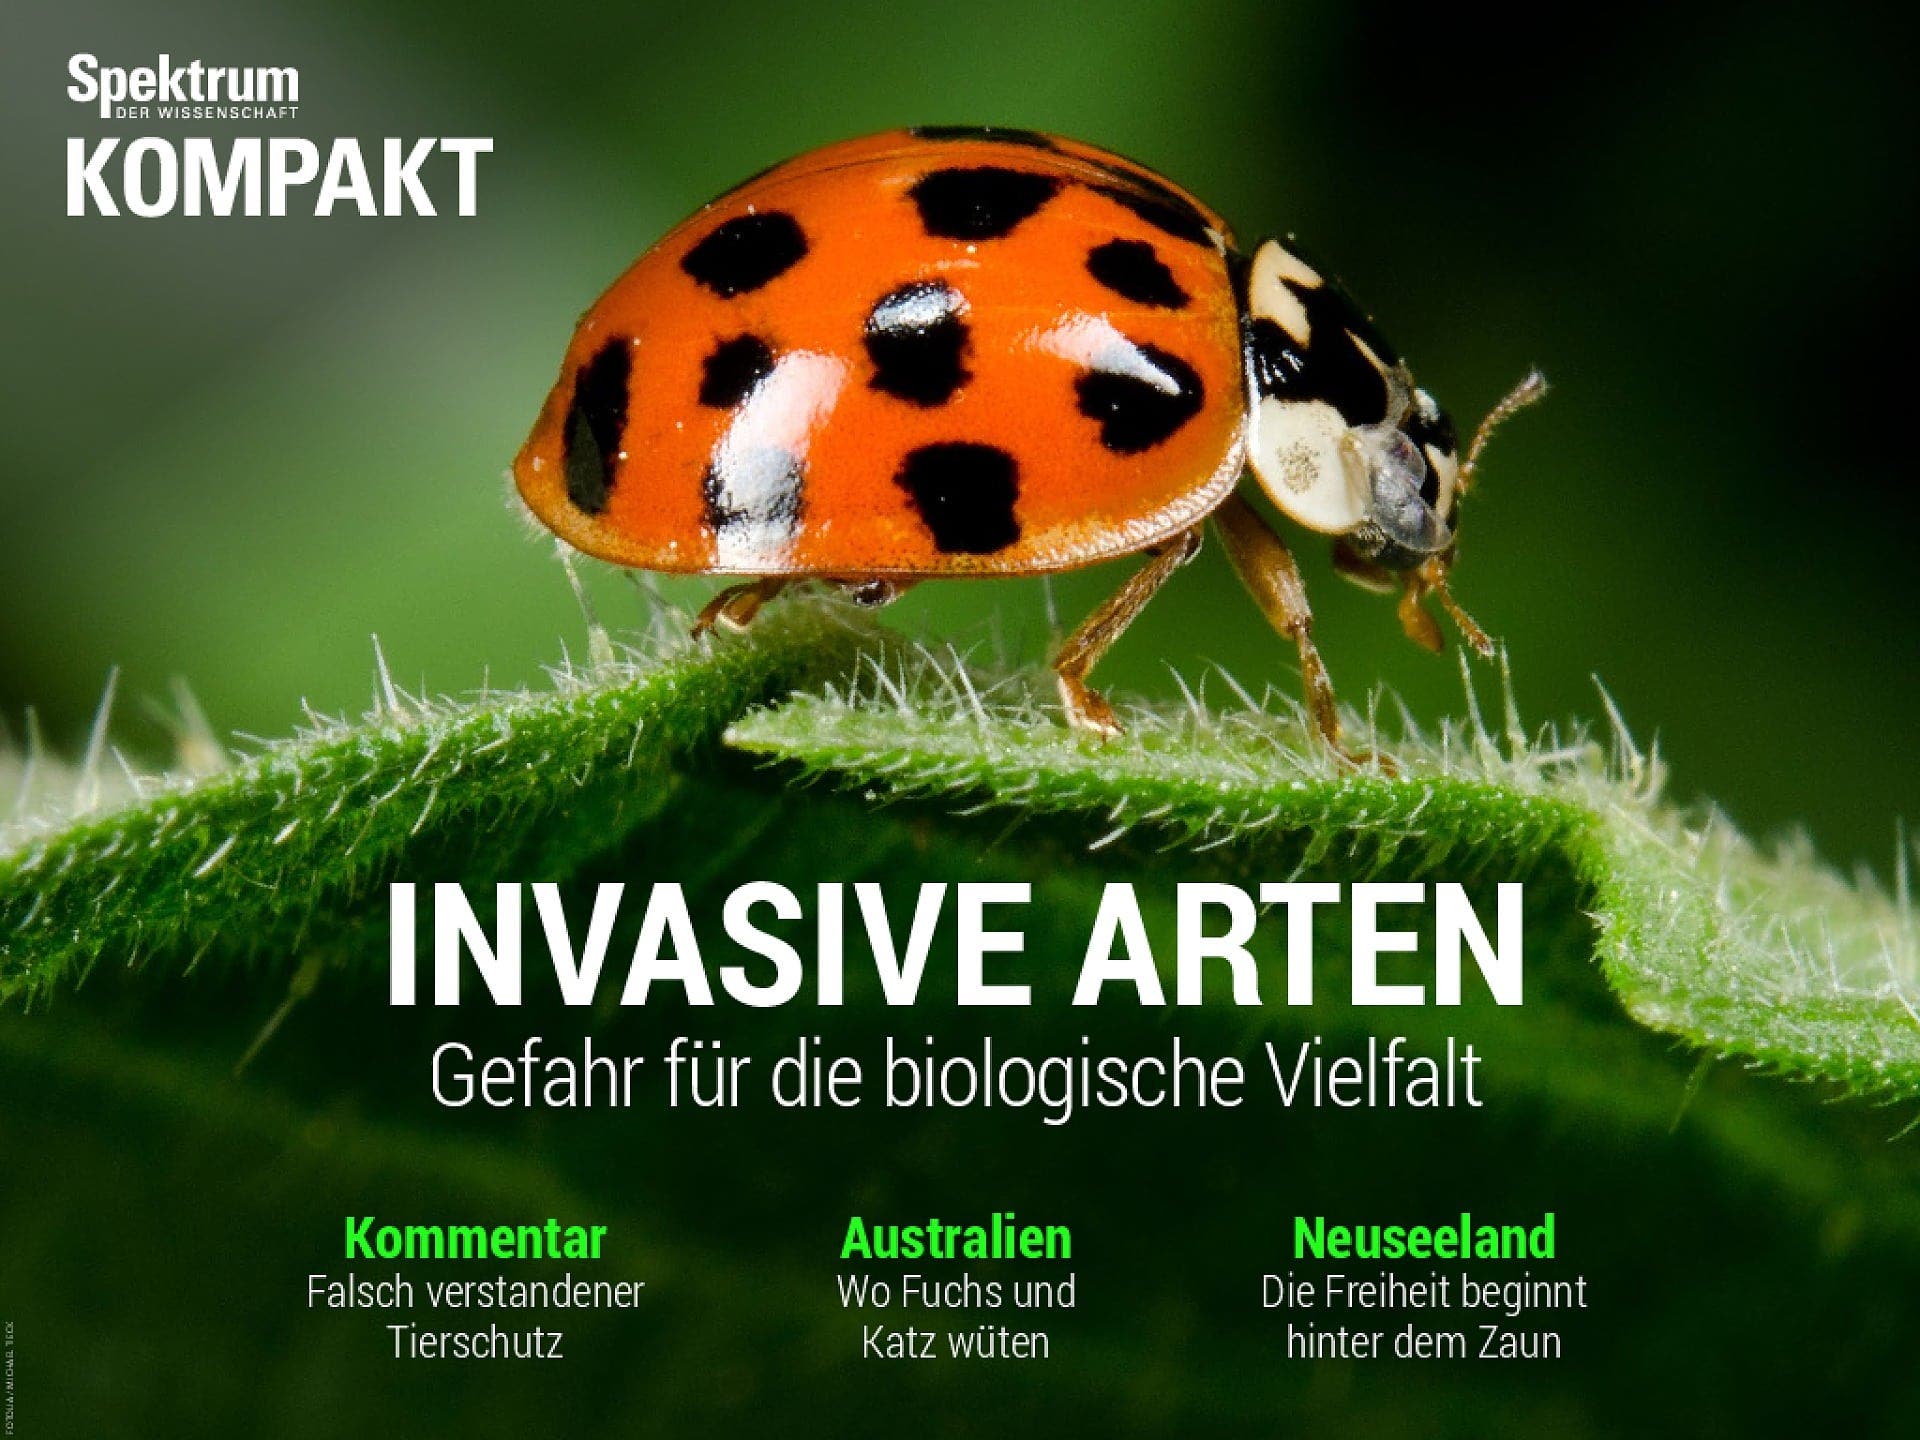 Invasive Arten - Gefahr für die biologische Vielfalt